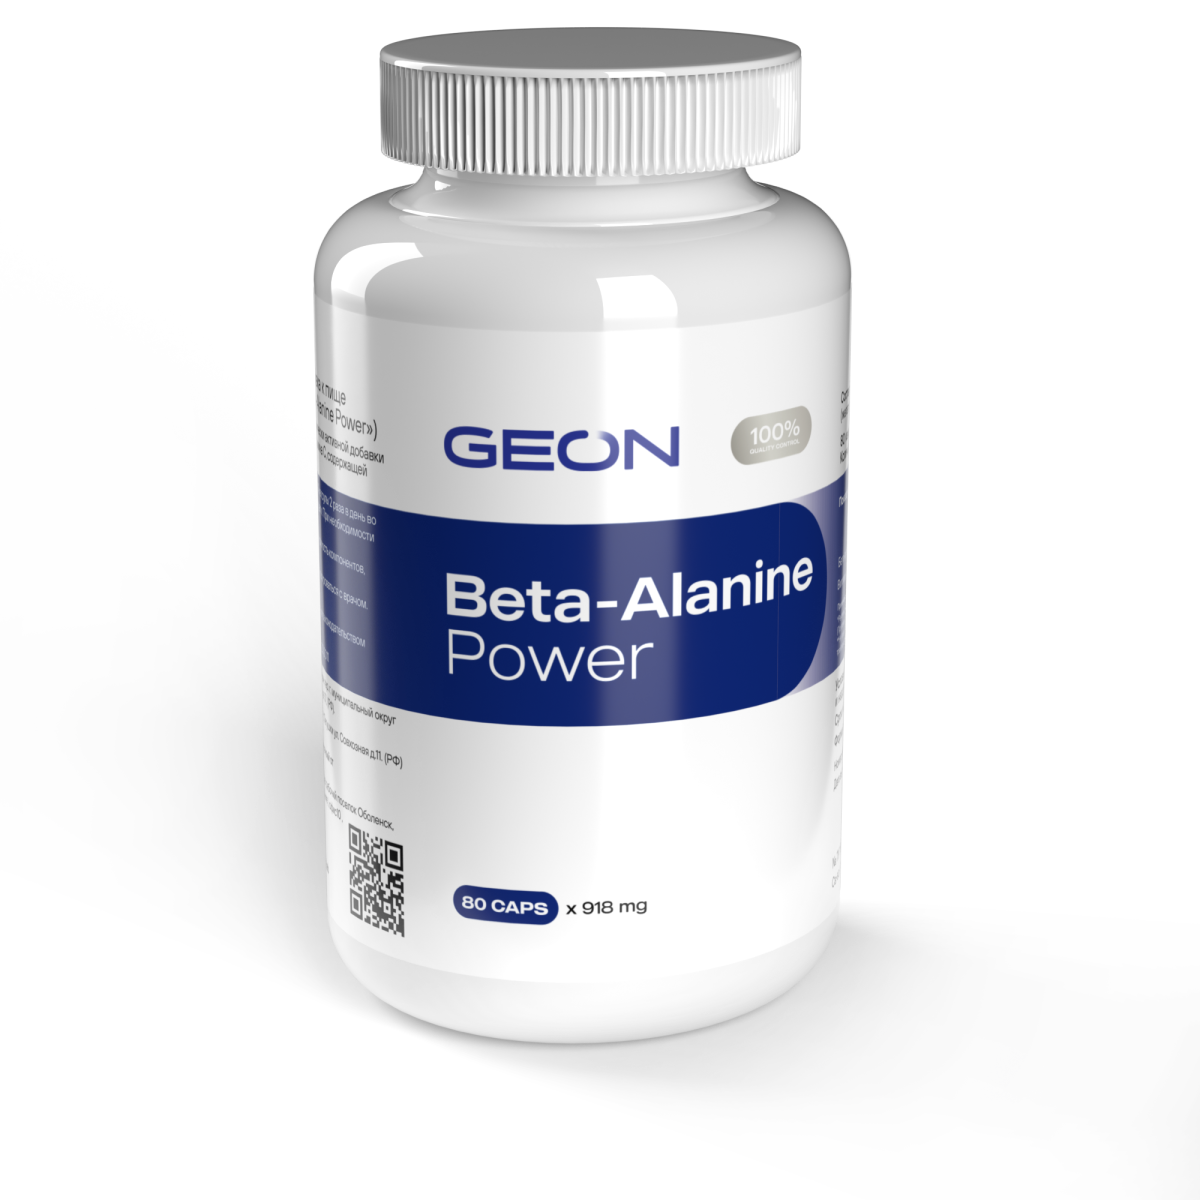 Оптстронг. Geon k2 Menaquinone Bone Health 396 мг. Geon. Портеин Geon. Бета-аланин при климаксе препараты нового поколения цена.